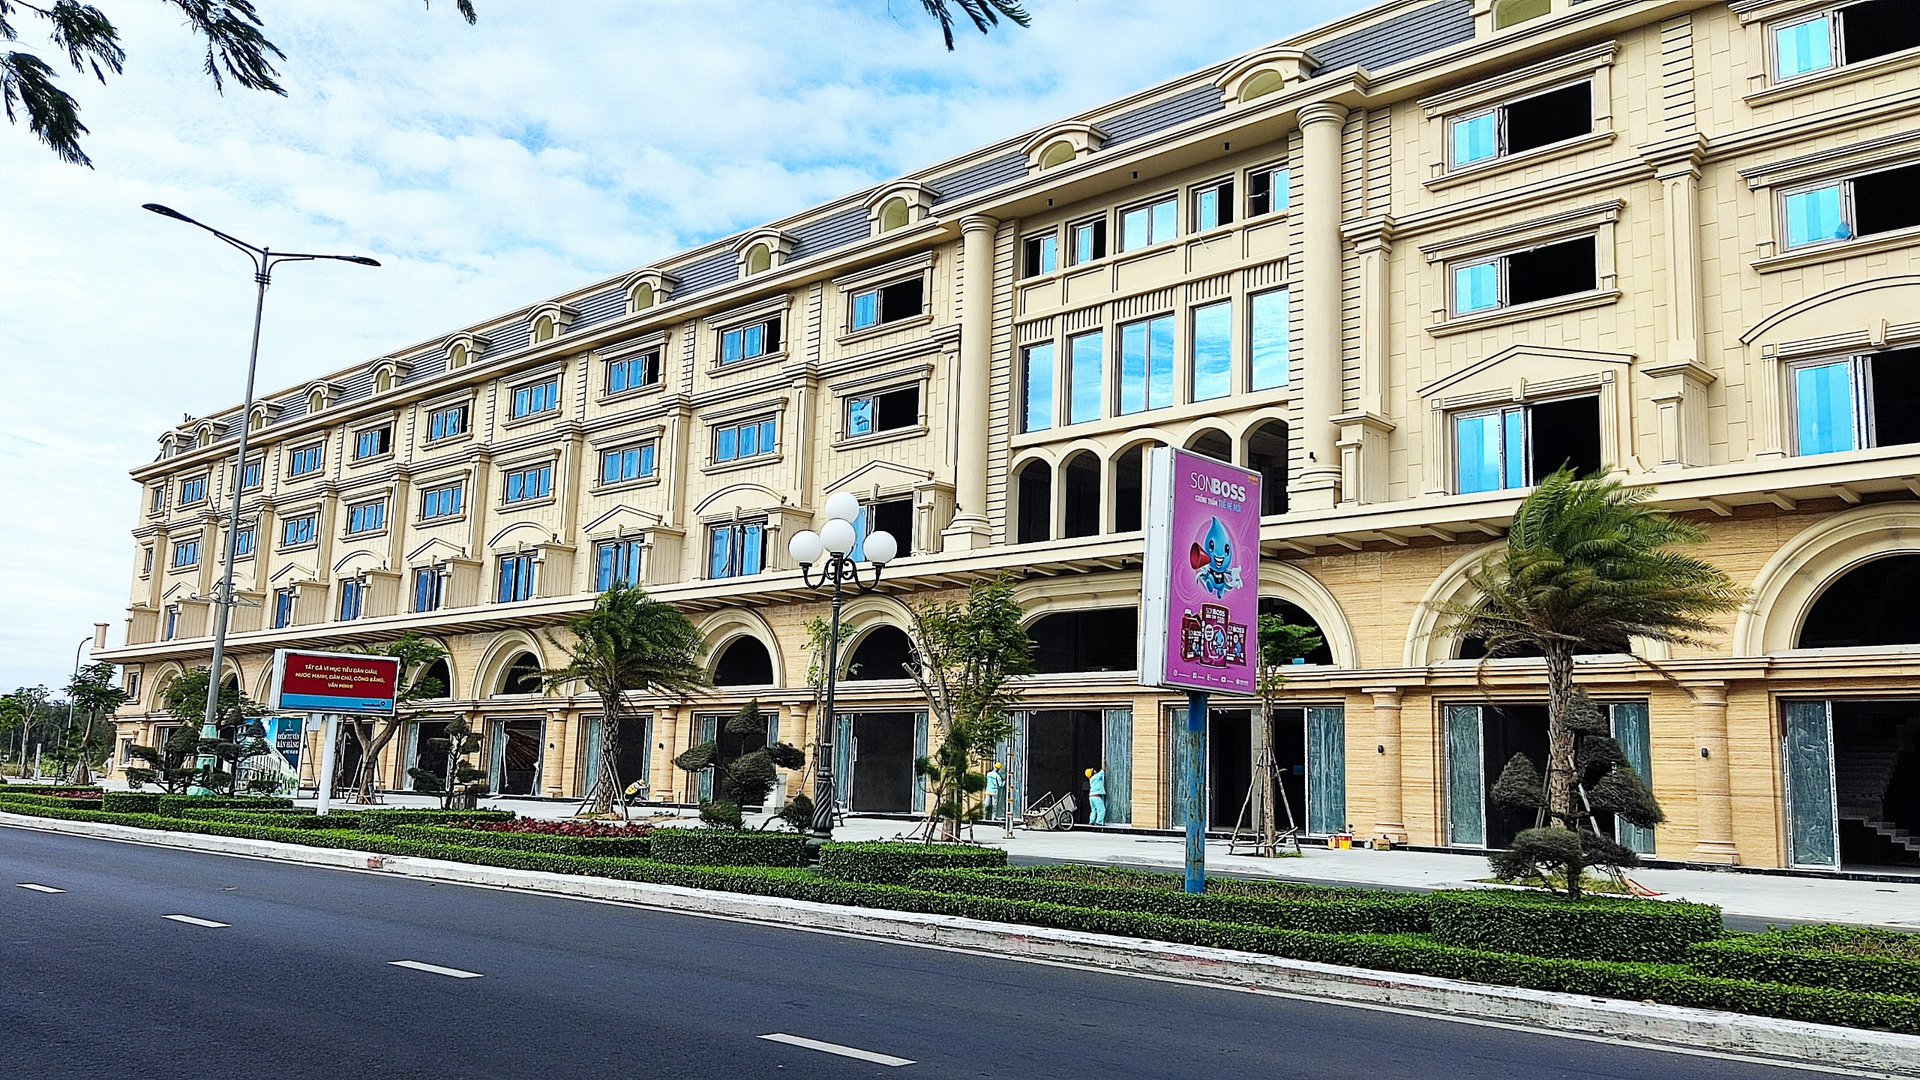 Regal Maison Phu Yen thổi làn gió mới vào thị trường BĐS Phú Yên - Viet Nam Smart City